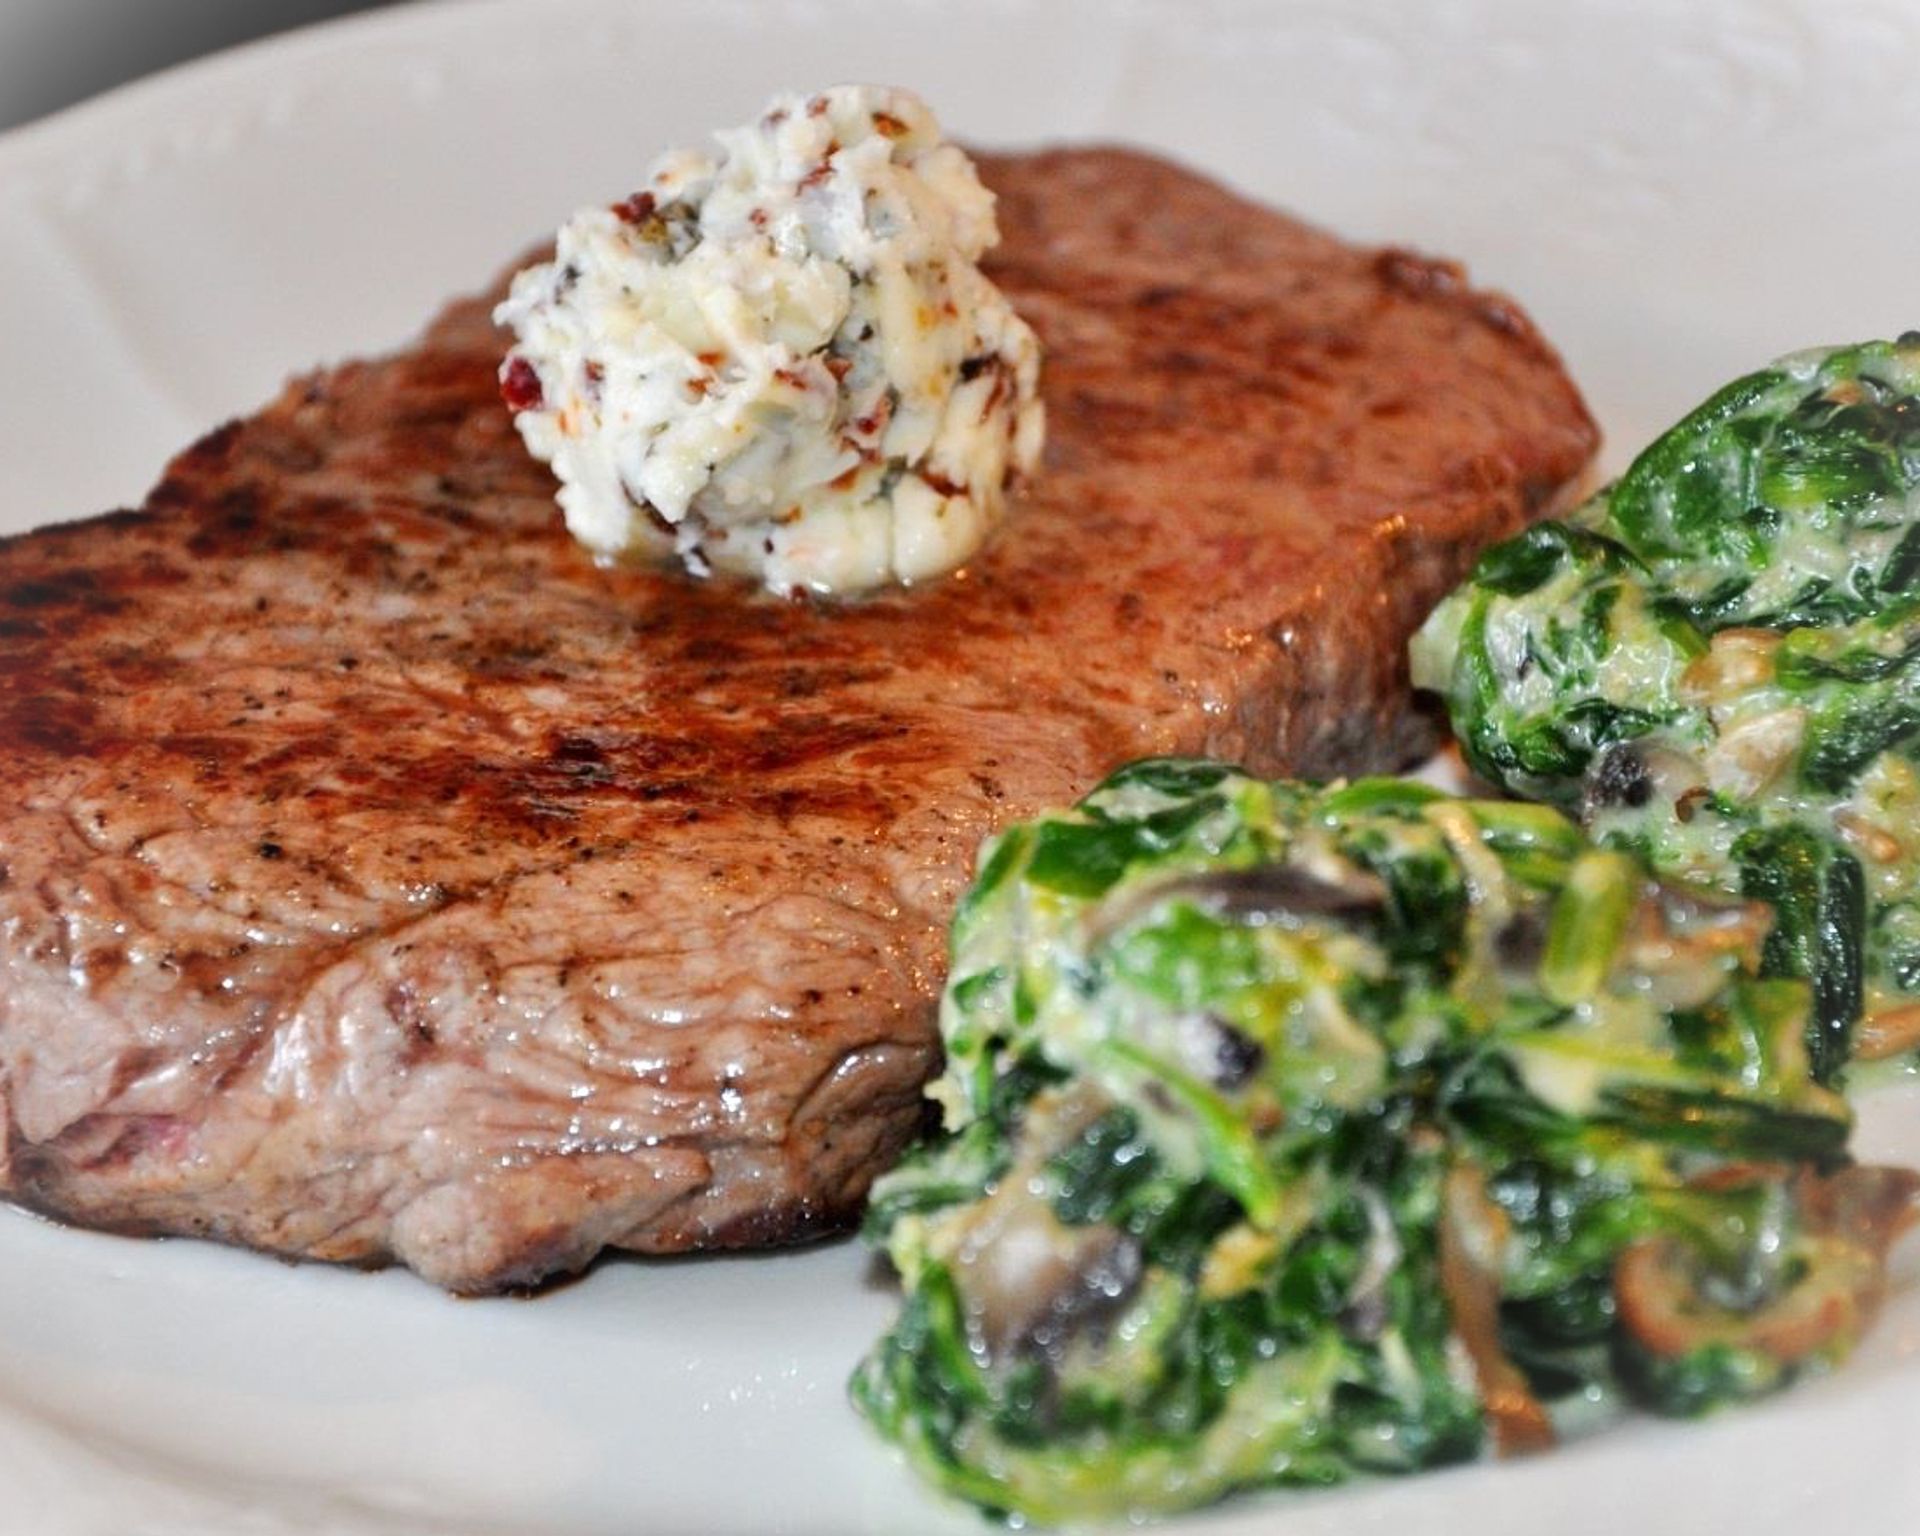 Steak z hovädzeho mäsa na tanieri so špenátom. Na vrchu je ozdobený kopčekom bylinkového masla.